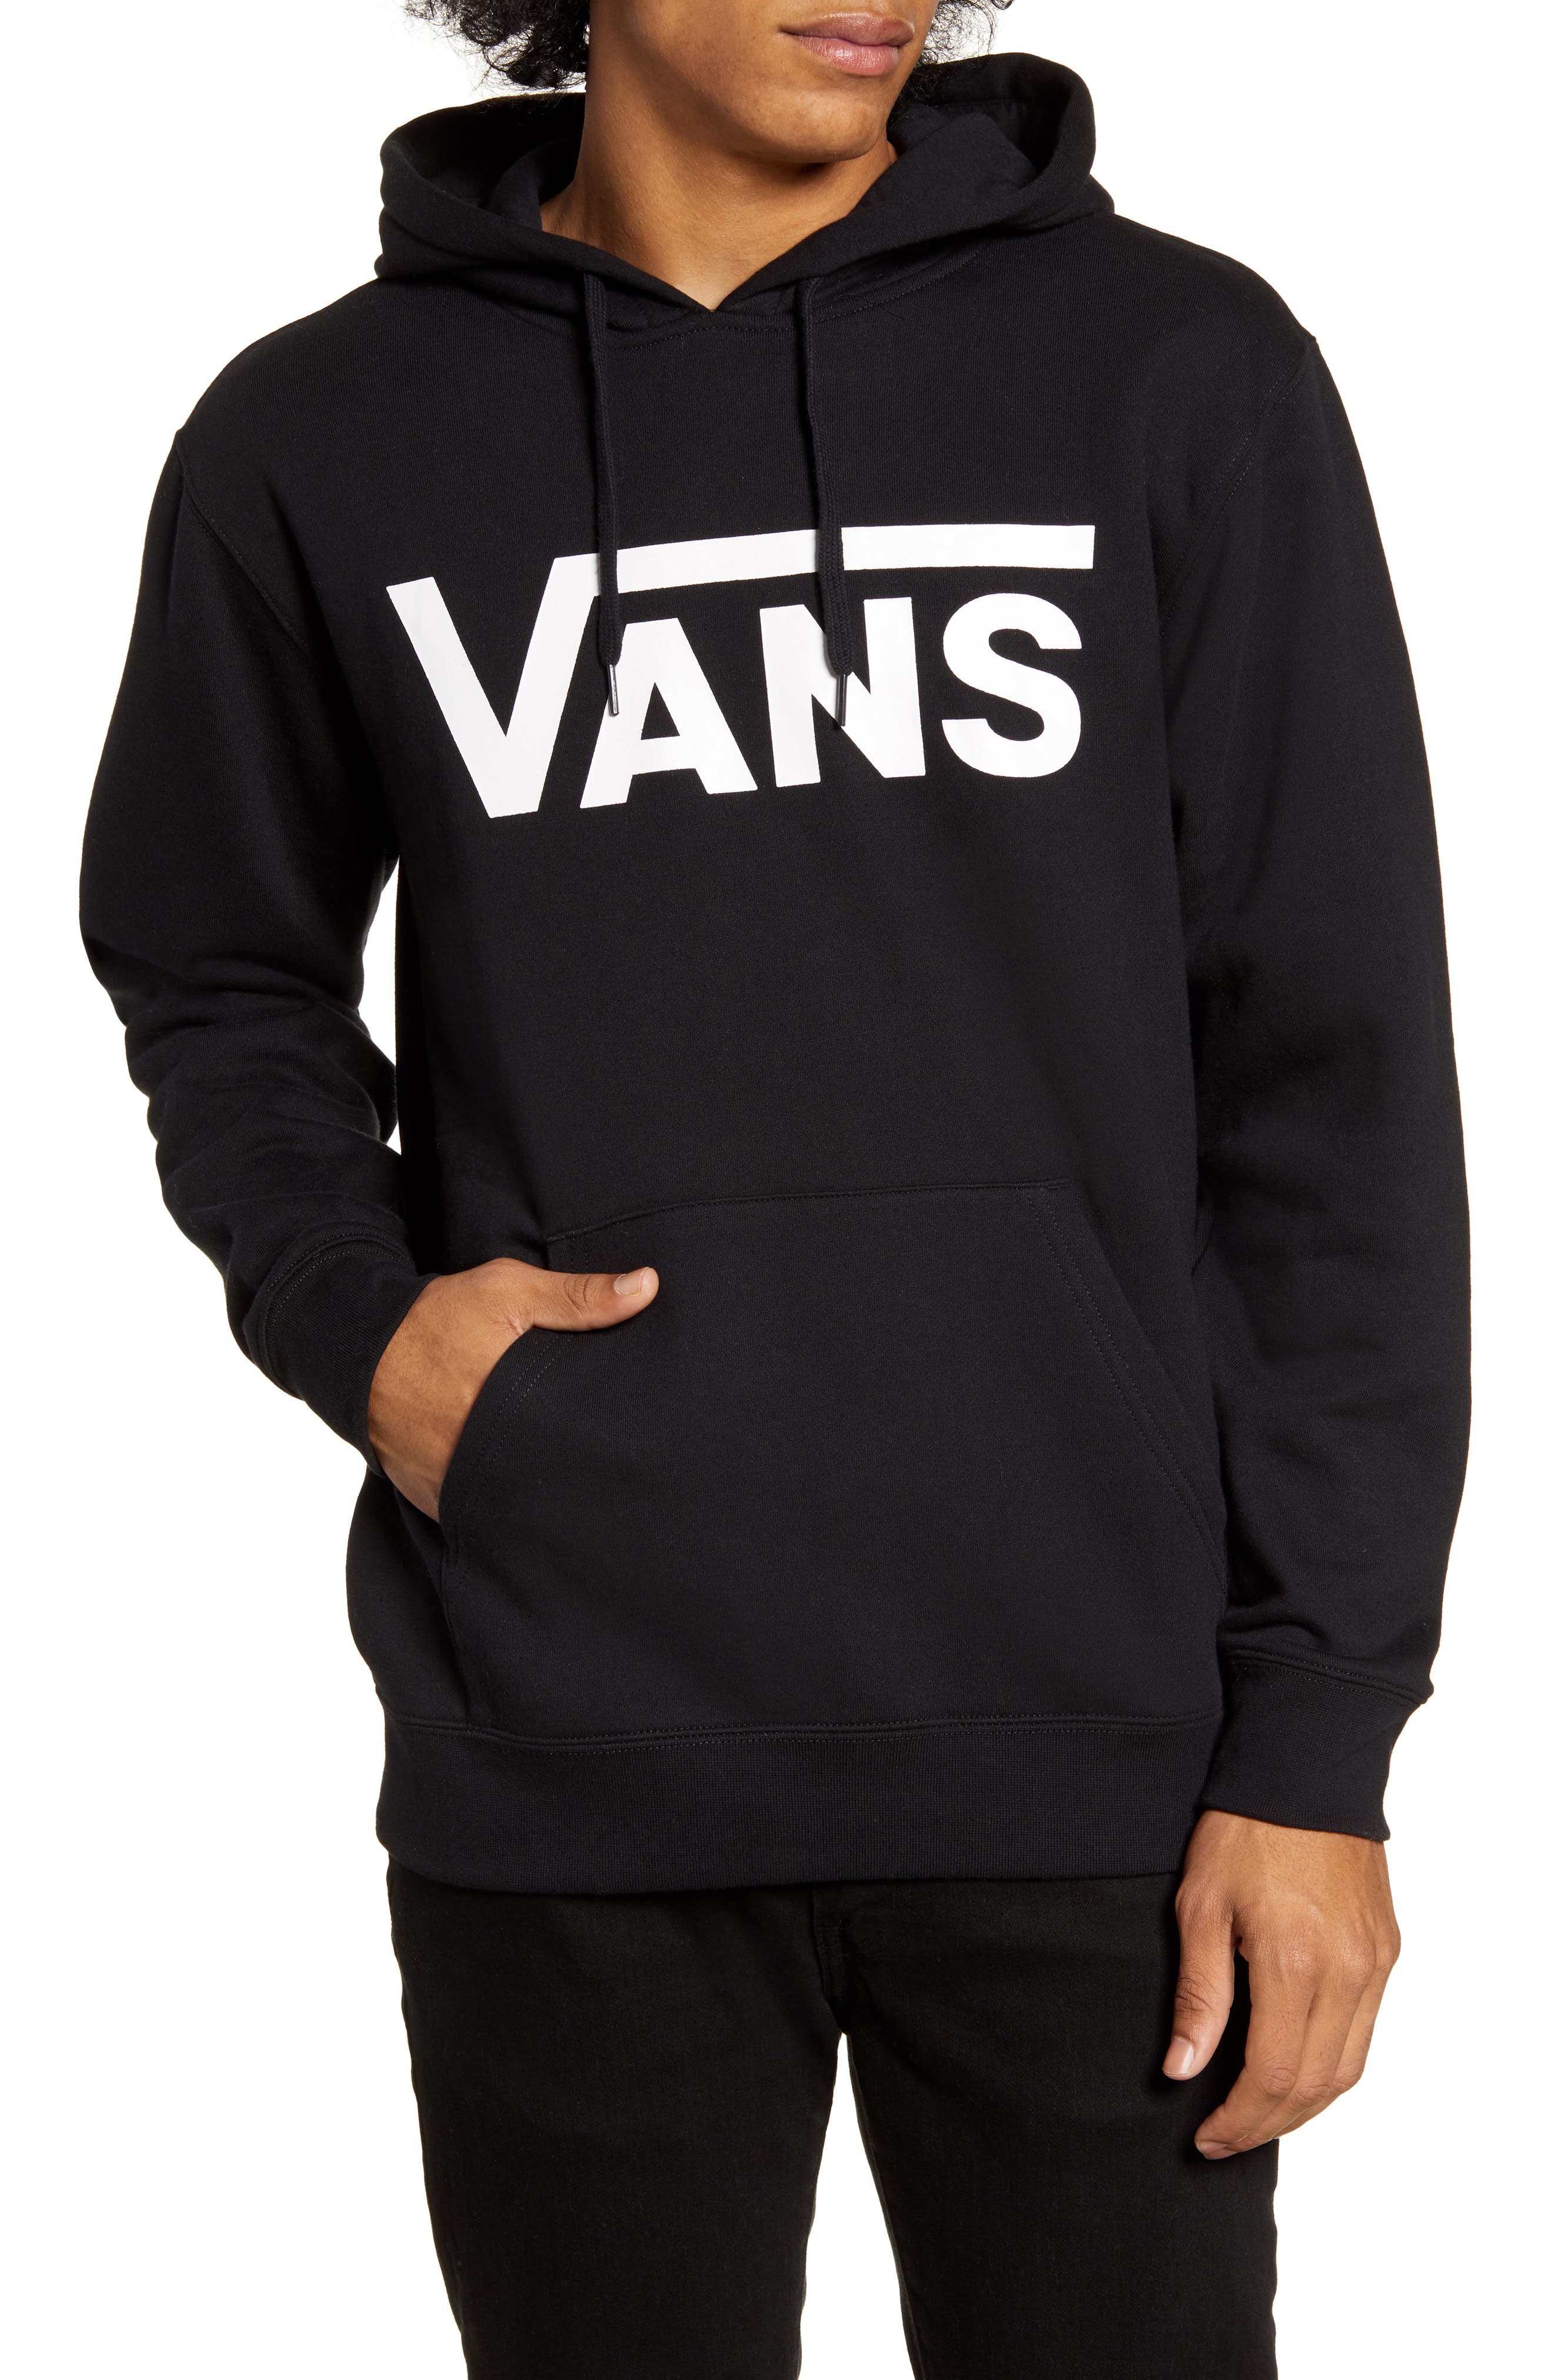 Men's Vans Sweatshirts \u0026 Hoodies 